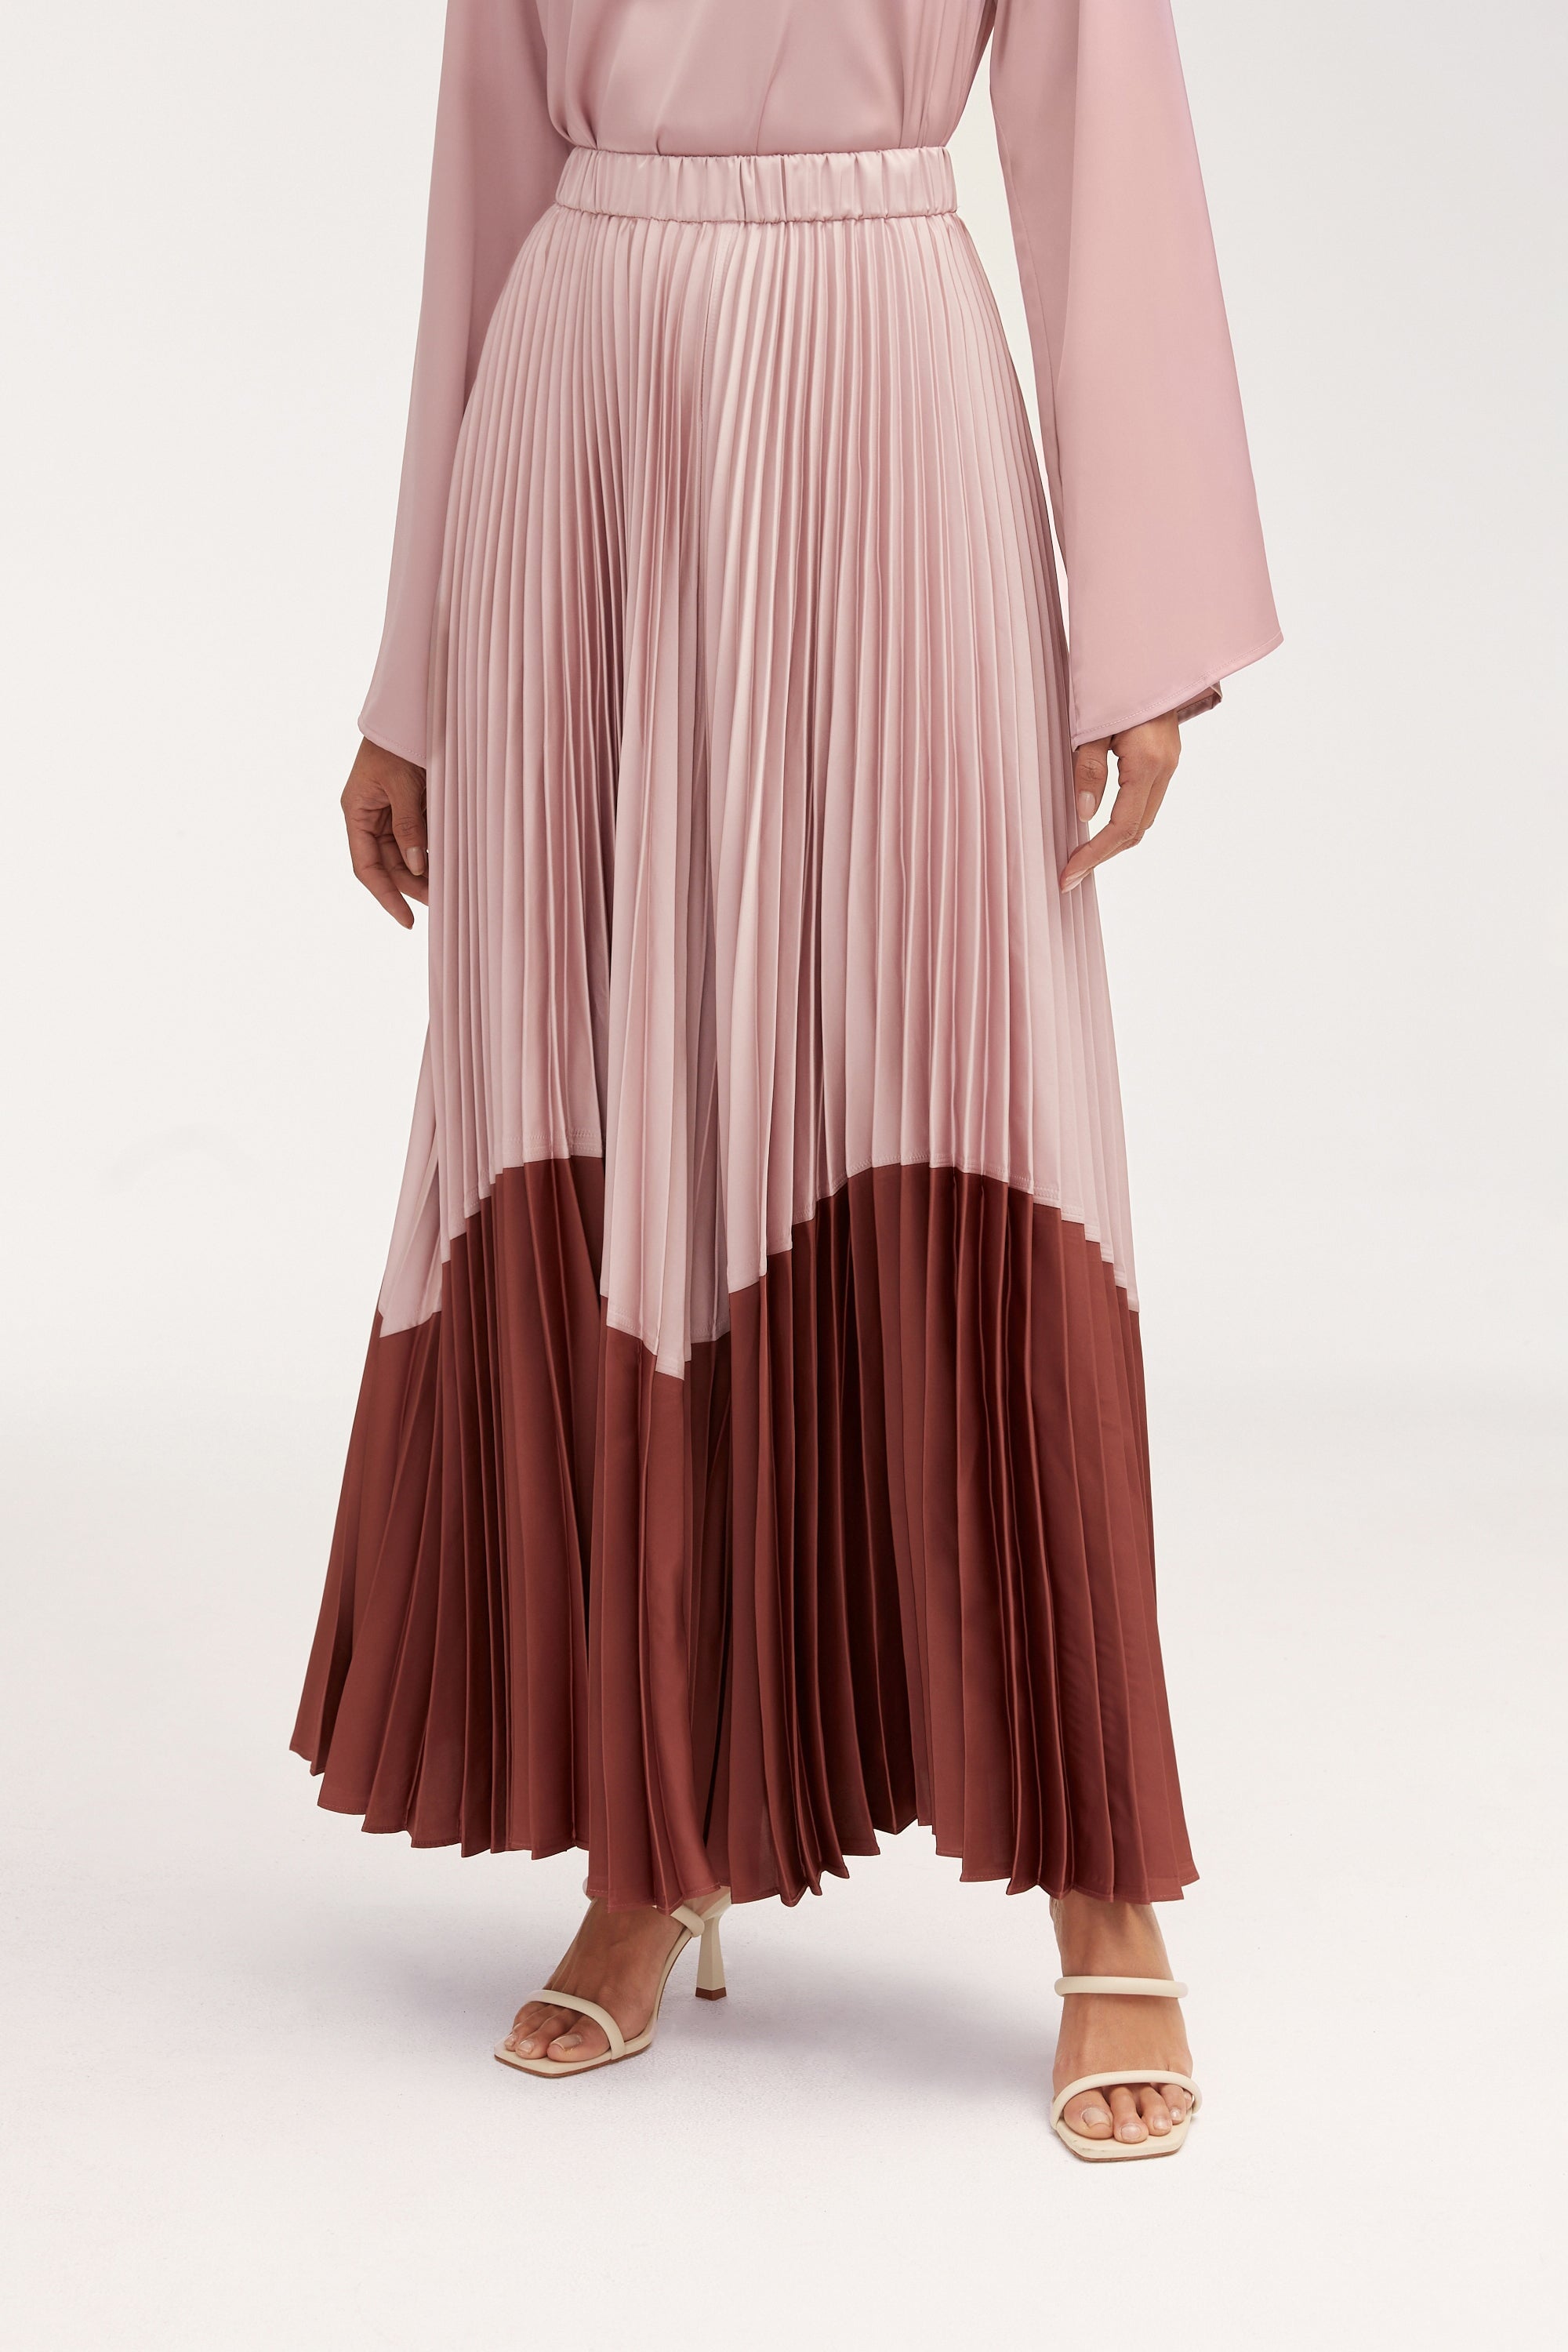 Hayfa Satin Pleated Skirt Clothing Veiled 